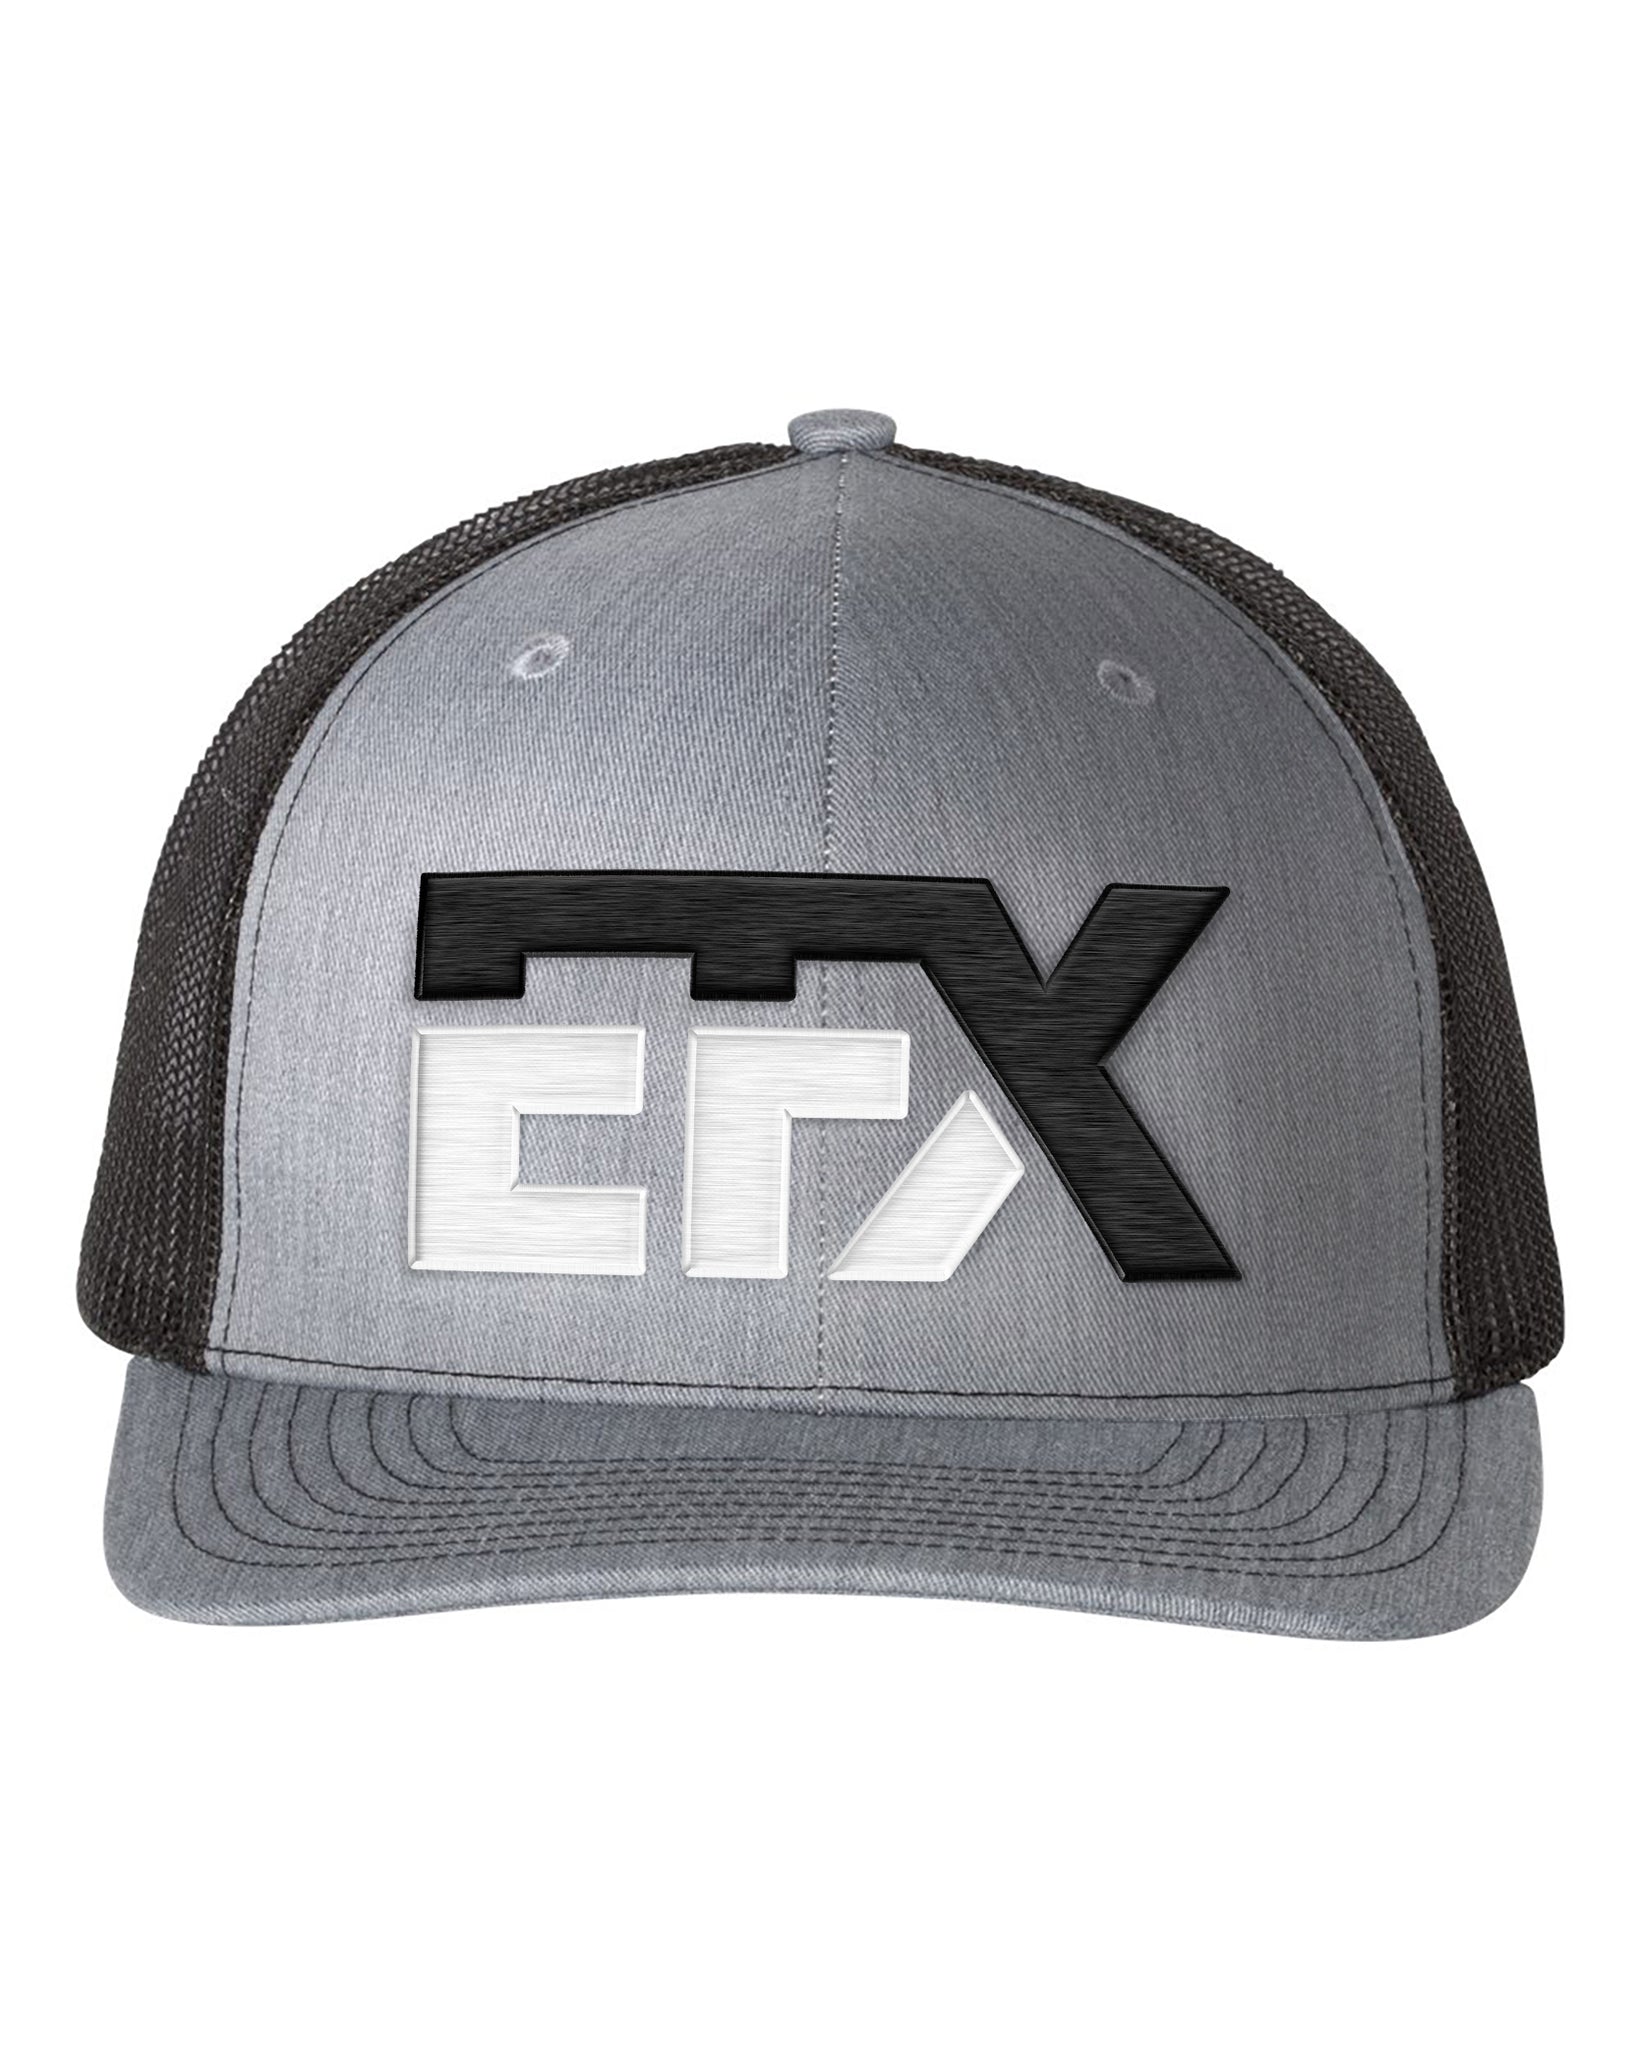 Logo-Short-Black & White on Black & Gray Hat